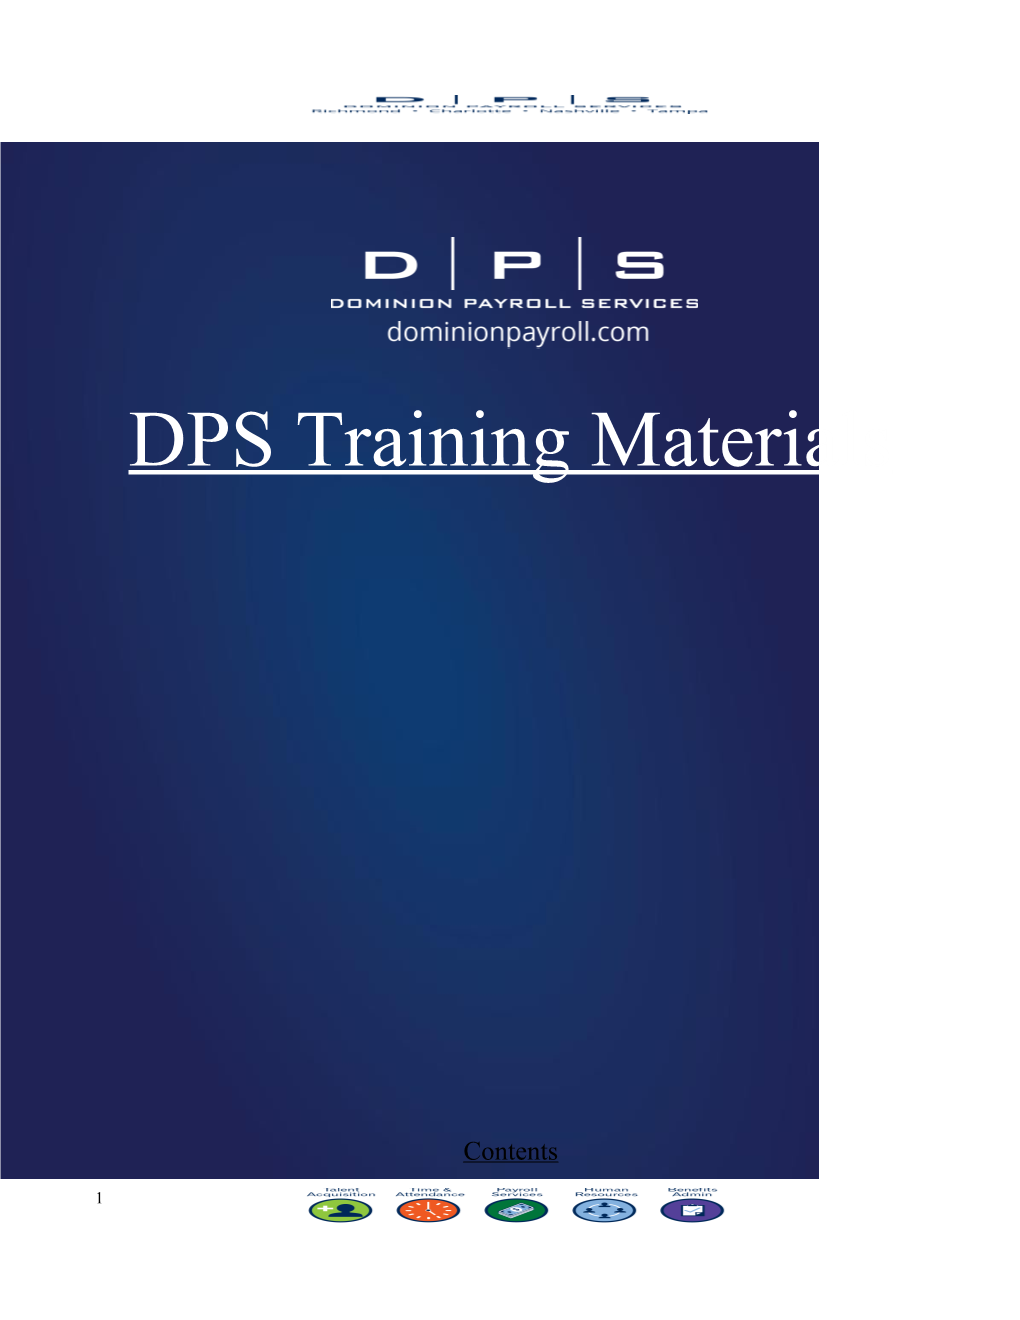 DPS Training Materials